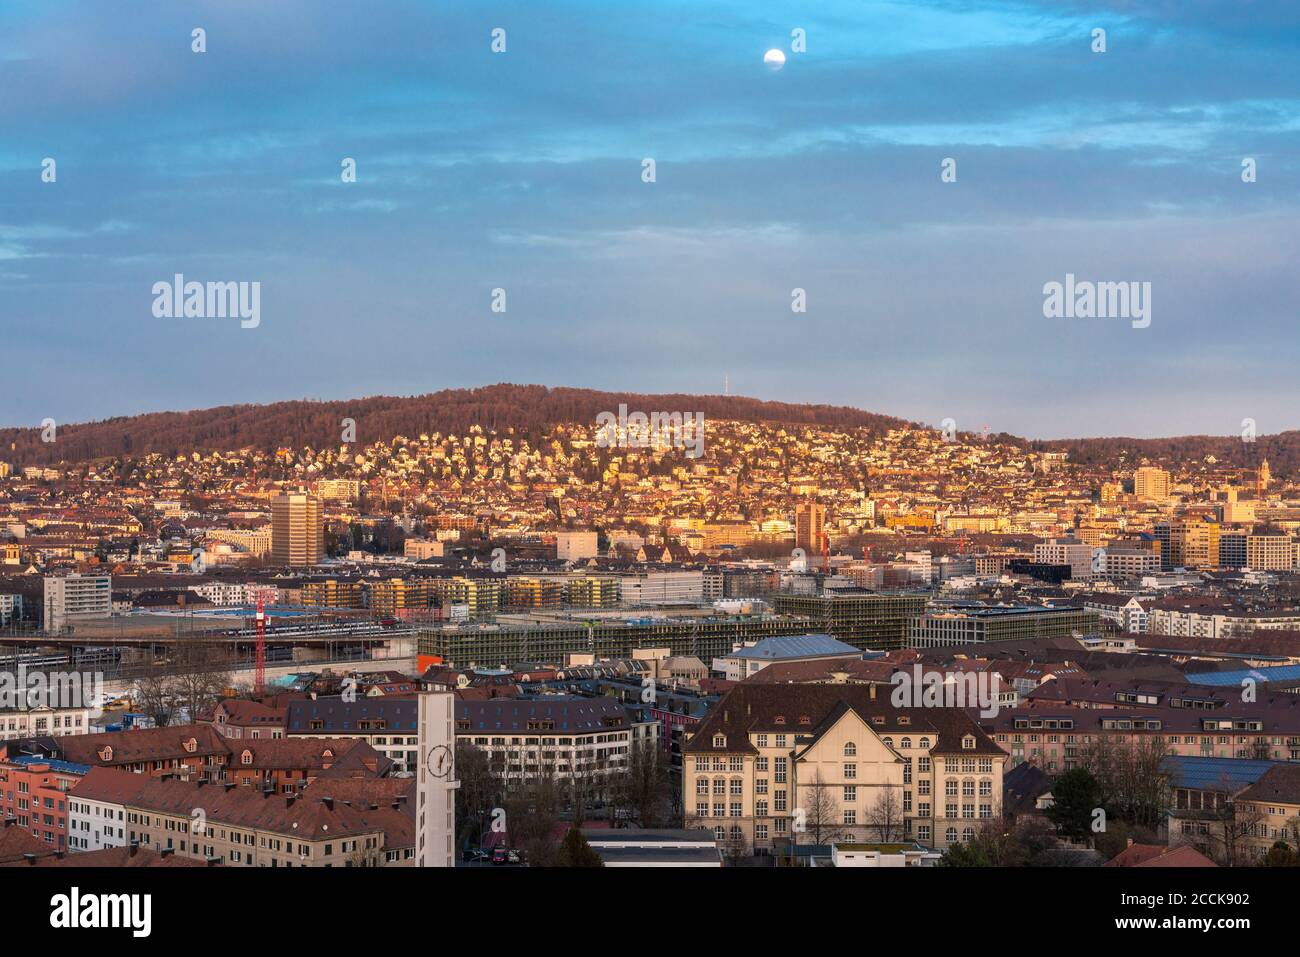 Switzerland, Zurich, Cityscape at dusk, aerial view Stock Photo